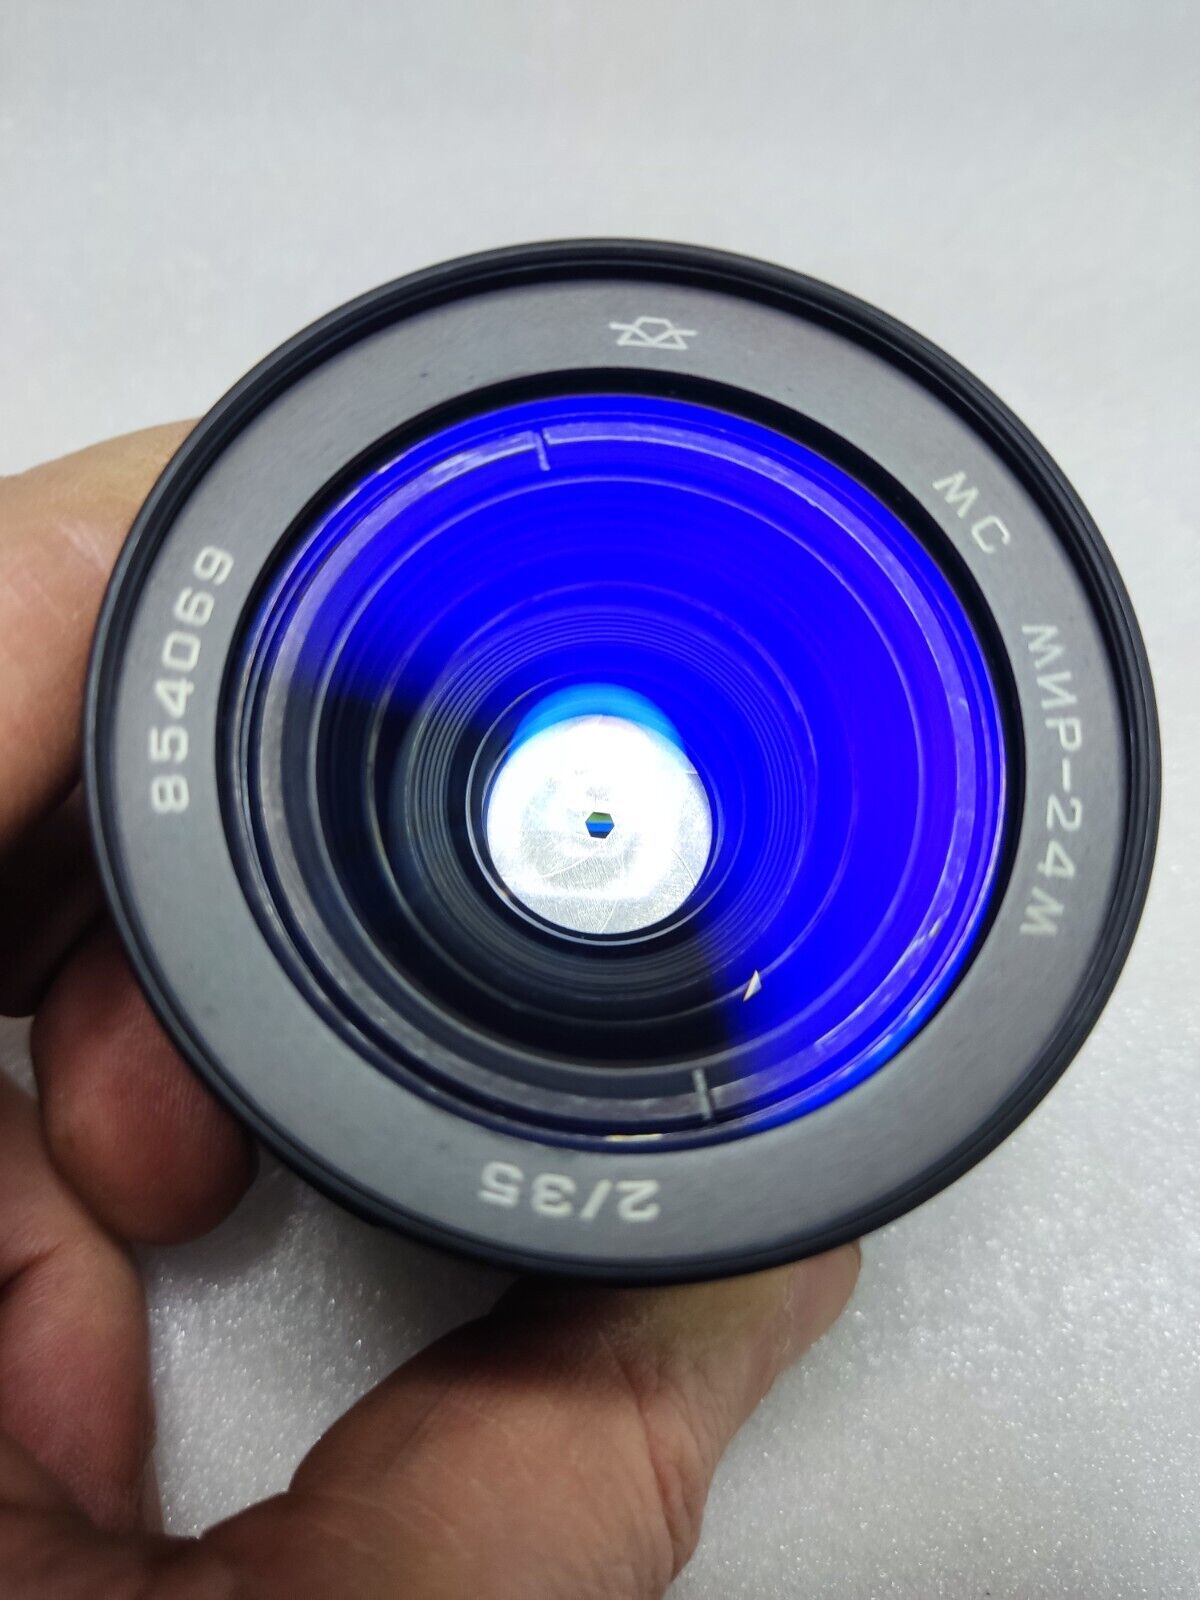 MC Mir-24M 35/2.0 M42 wide-angle Prime Lens for Zenit Pentax Praktica Bessaflex